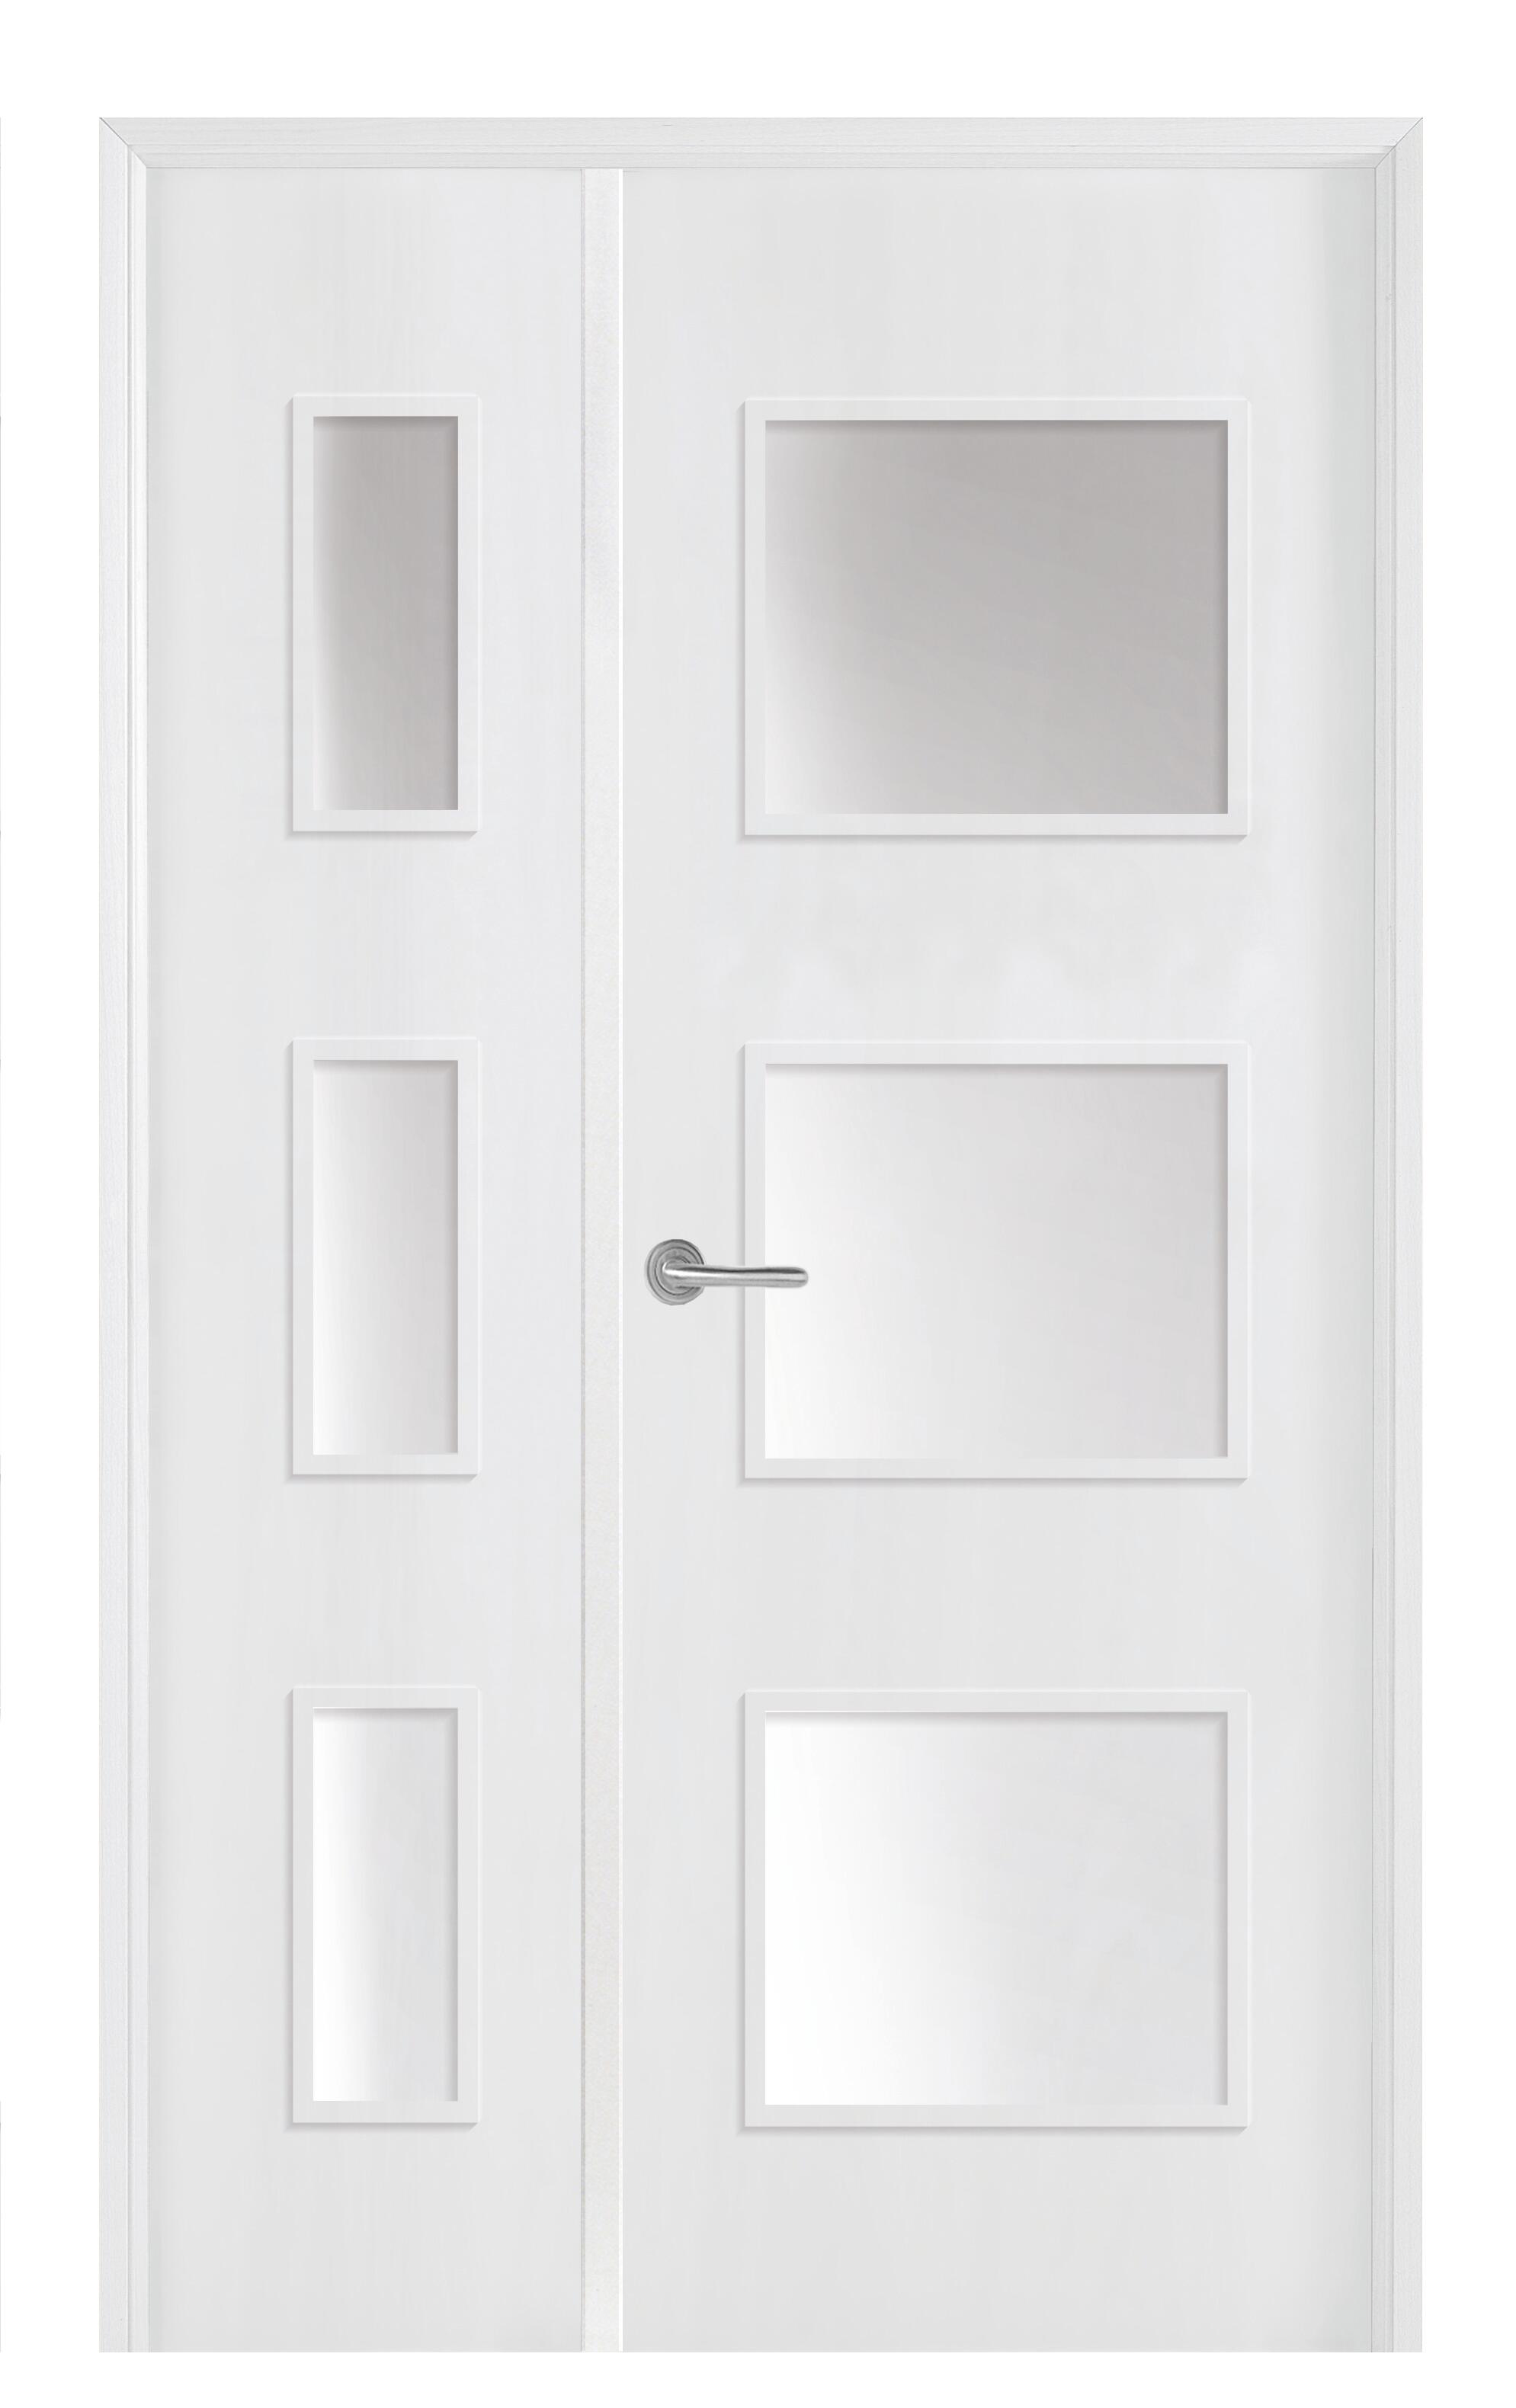 Puerta doble con cristal bari plus blanca 9x105cm (62+42) i